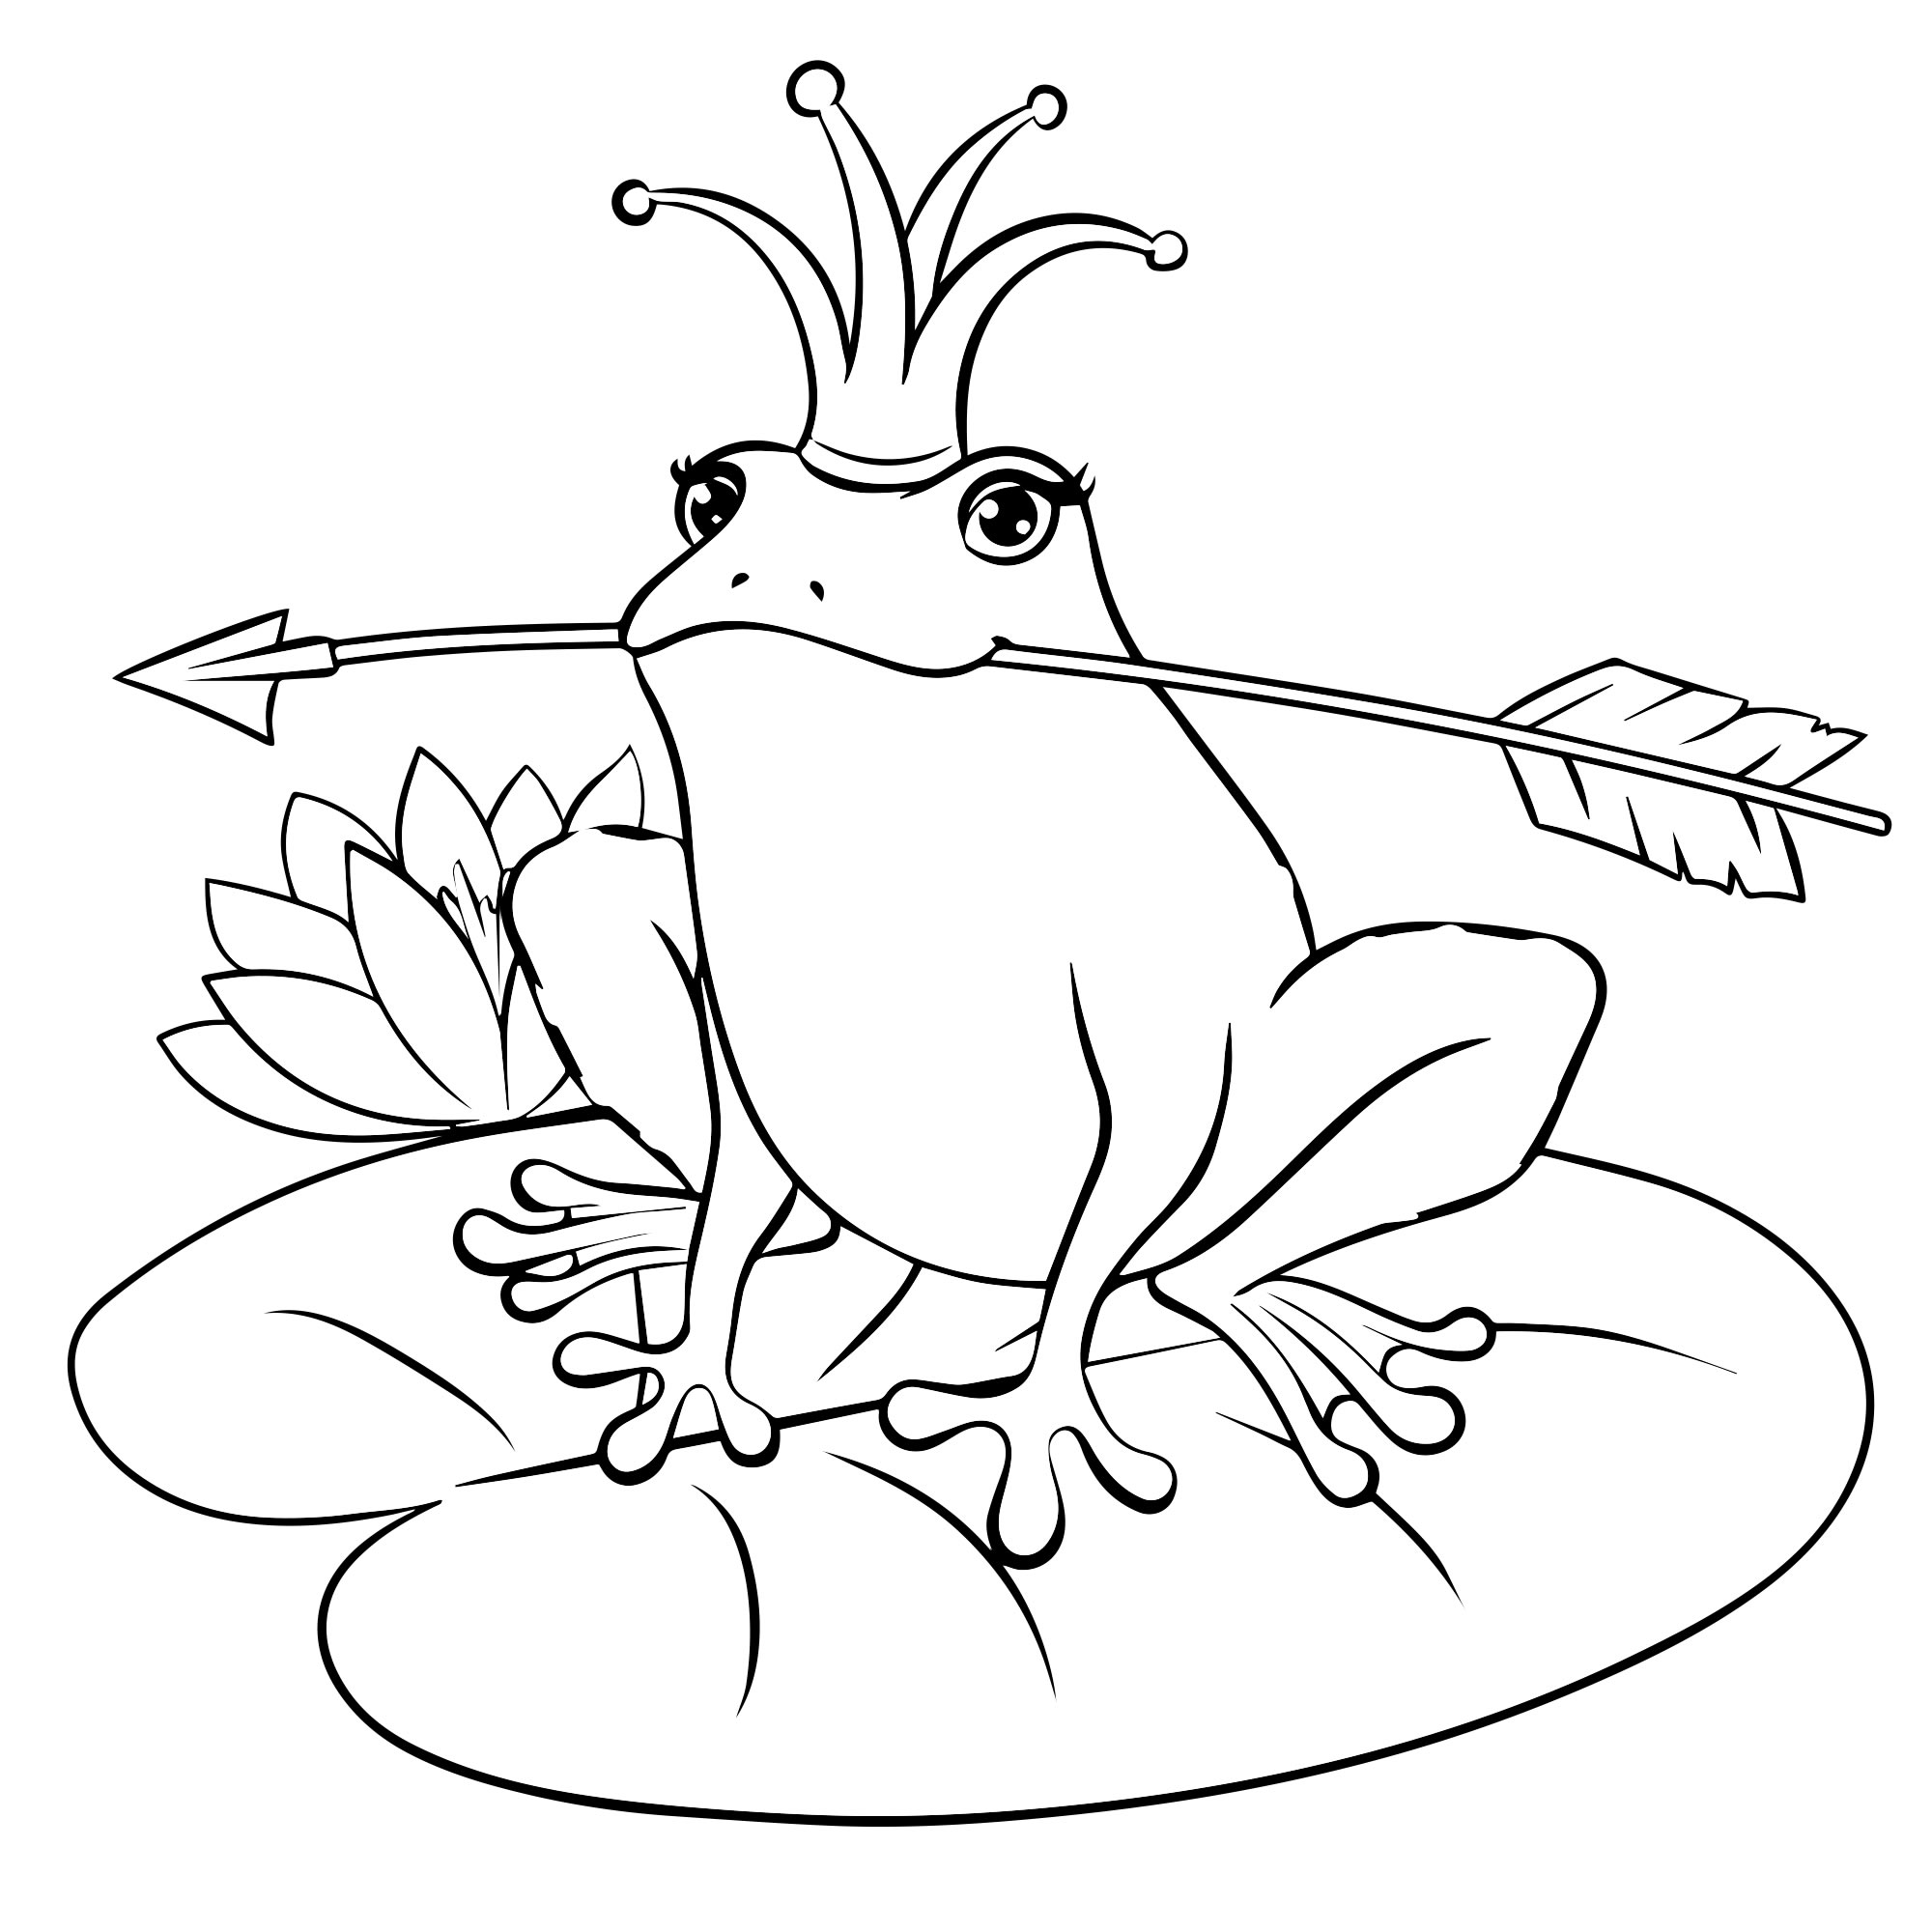 Скачать или распечатать раскраски из сказки Царевна-лягушка для детей